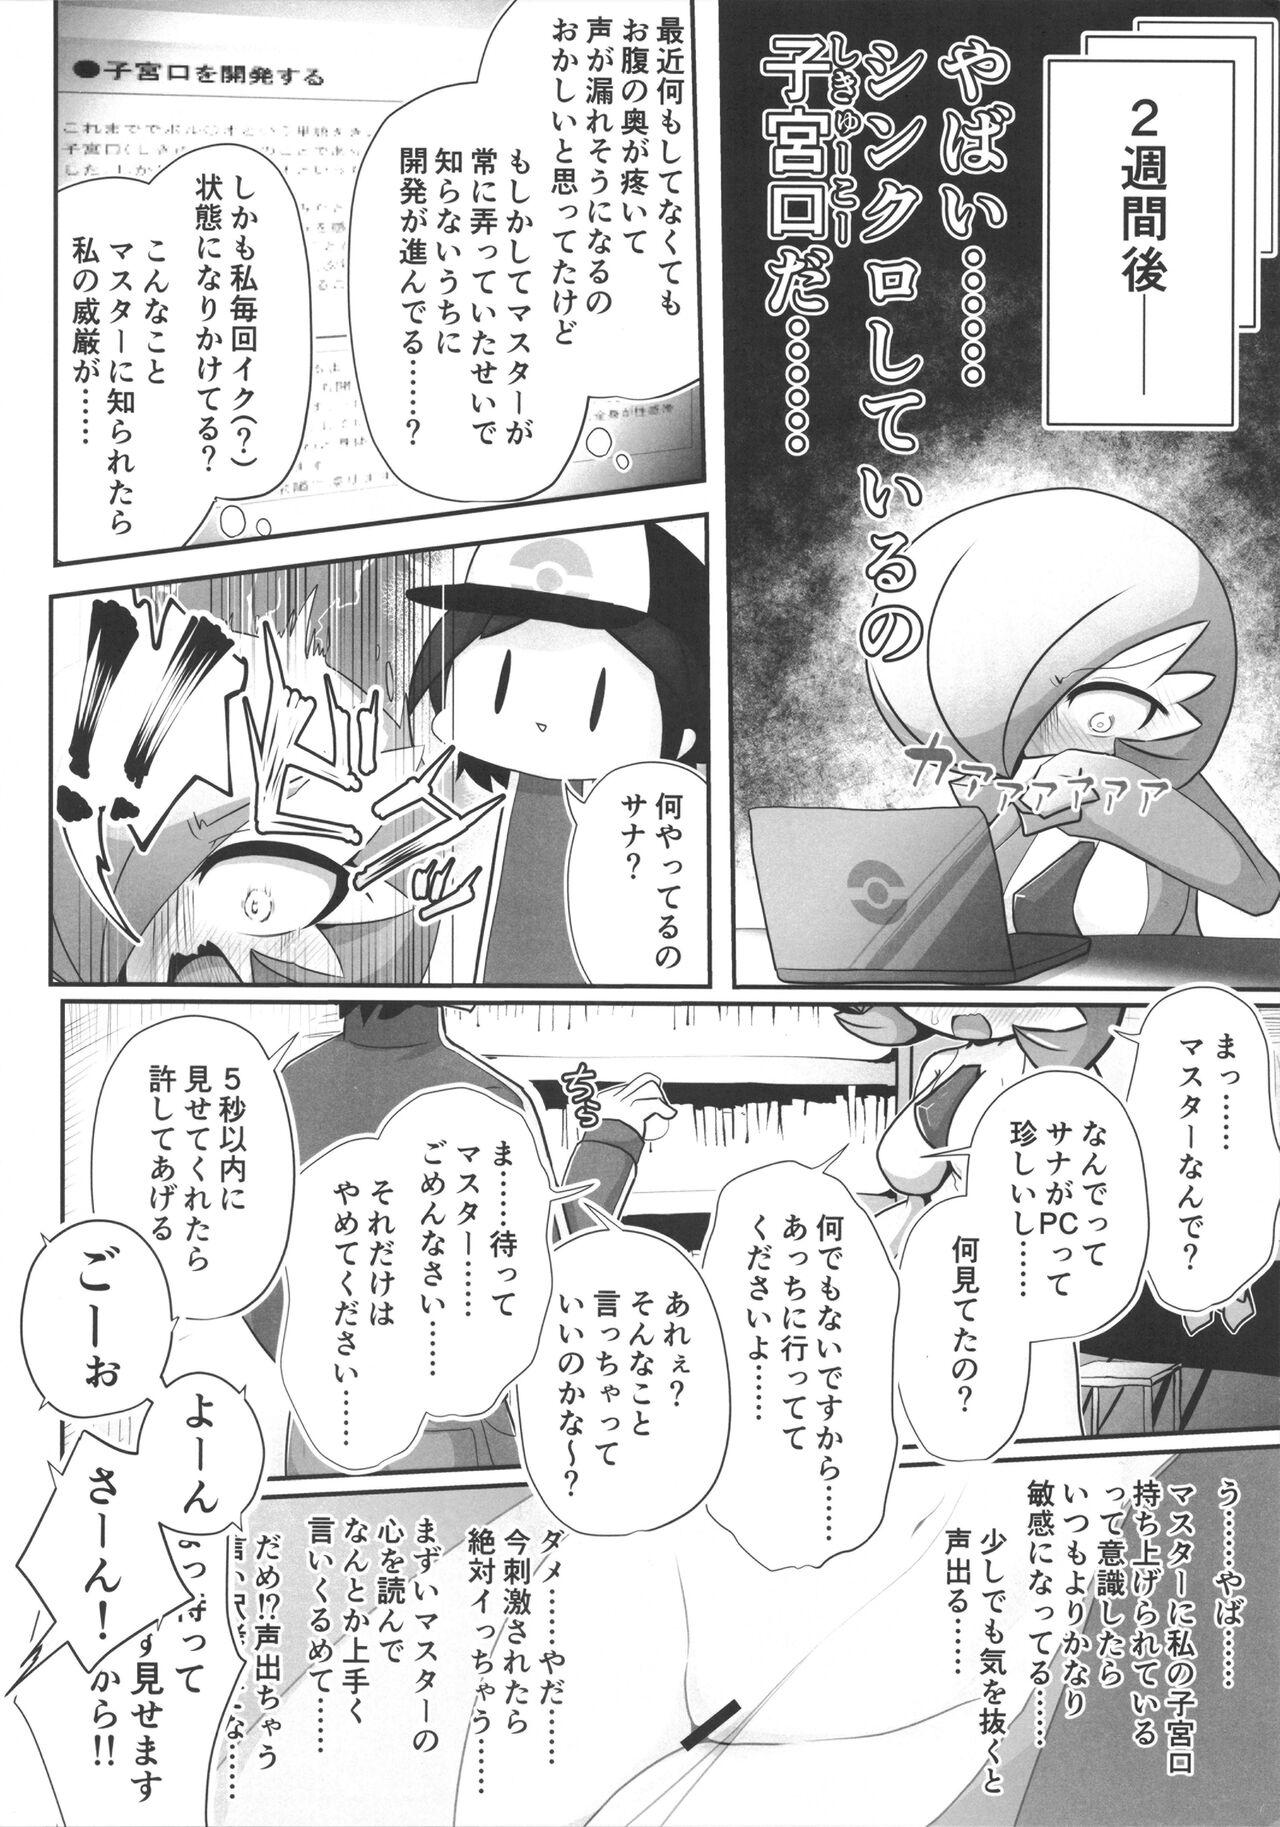 Bubblebutt Saucy Sana and Synchronization Remake Version - Pokemon | pocket monsters Nena - Page 5